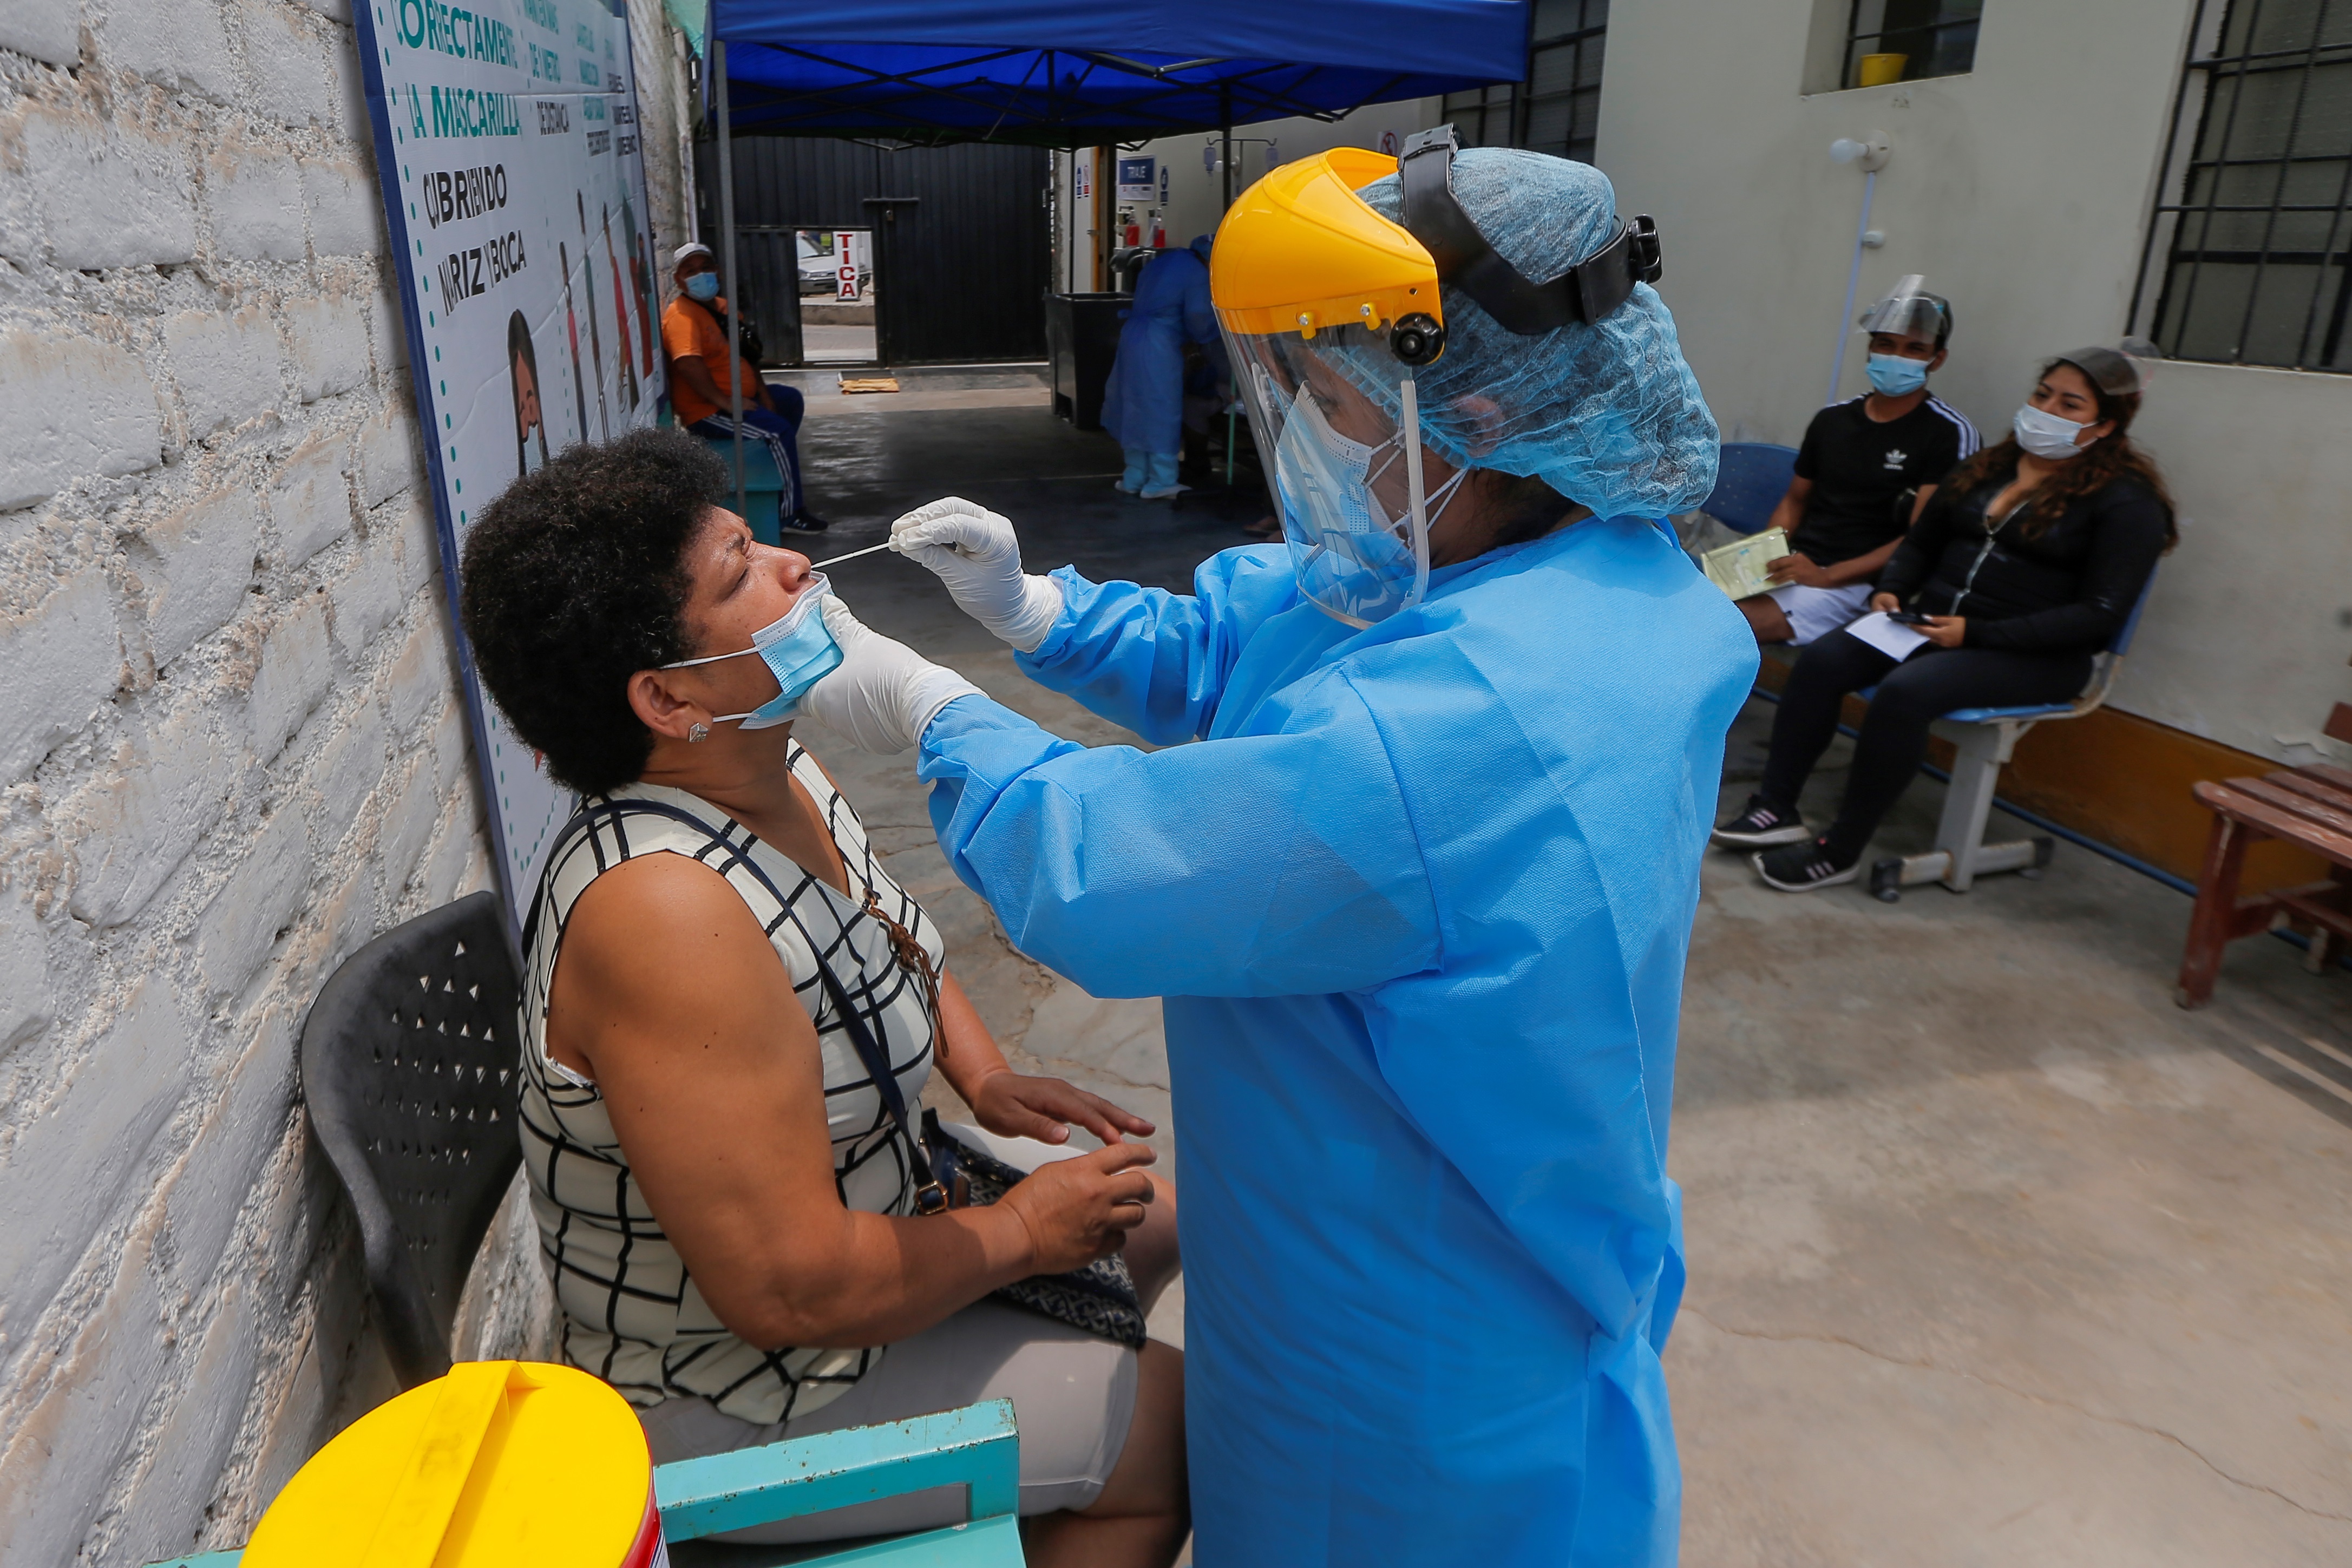 Una persona se realiza una prueba de coronavirus en Lima (Peru), en una fotografa de archivo. EFE/Luis ngel Gonzales Taipe
